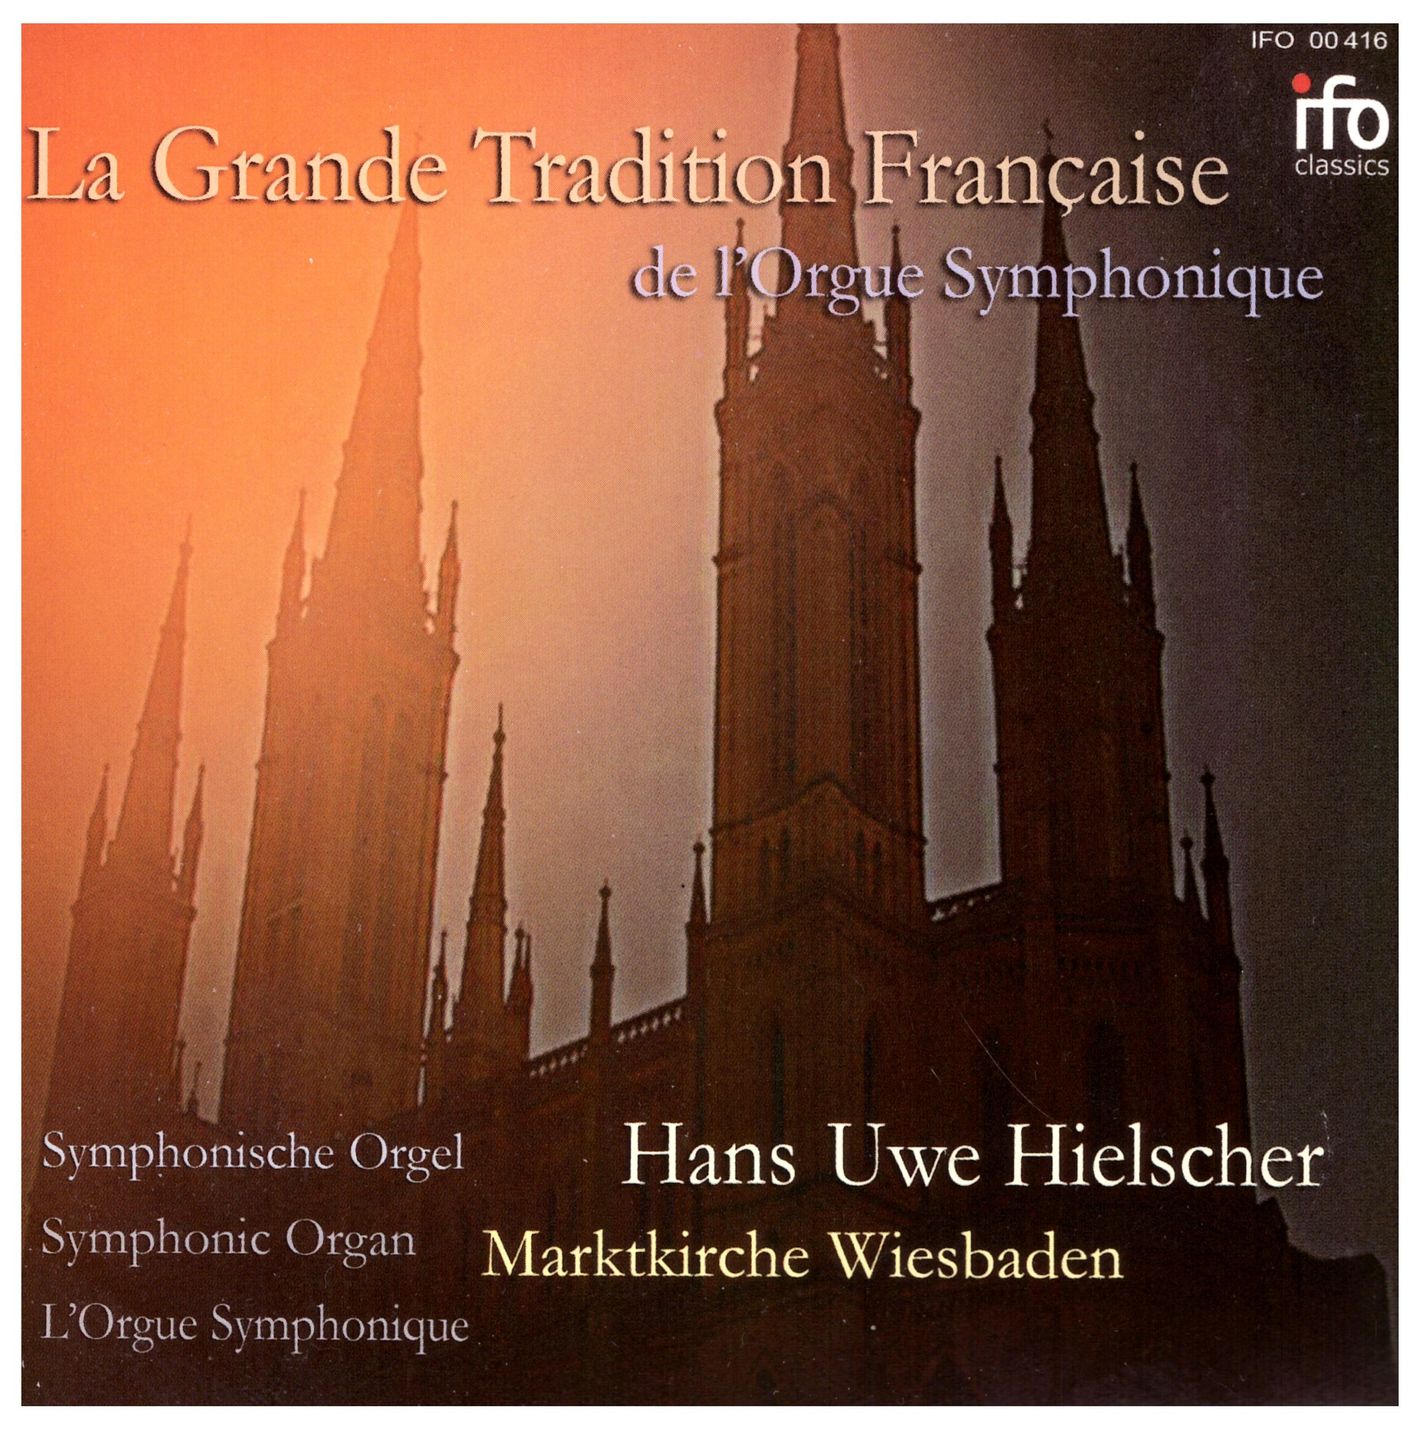 La Grande Tradition Française de l‘Orgue Symphonique